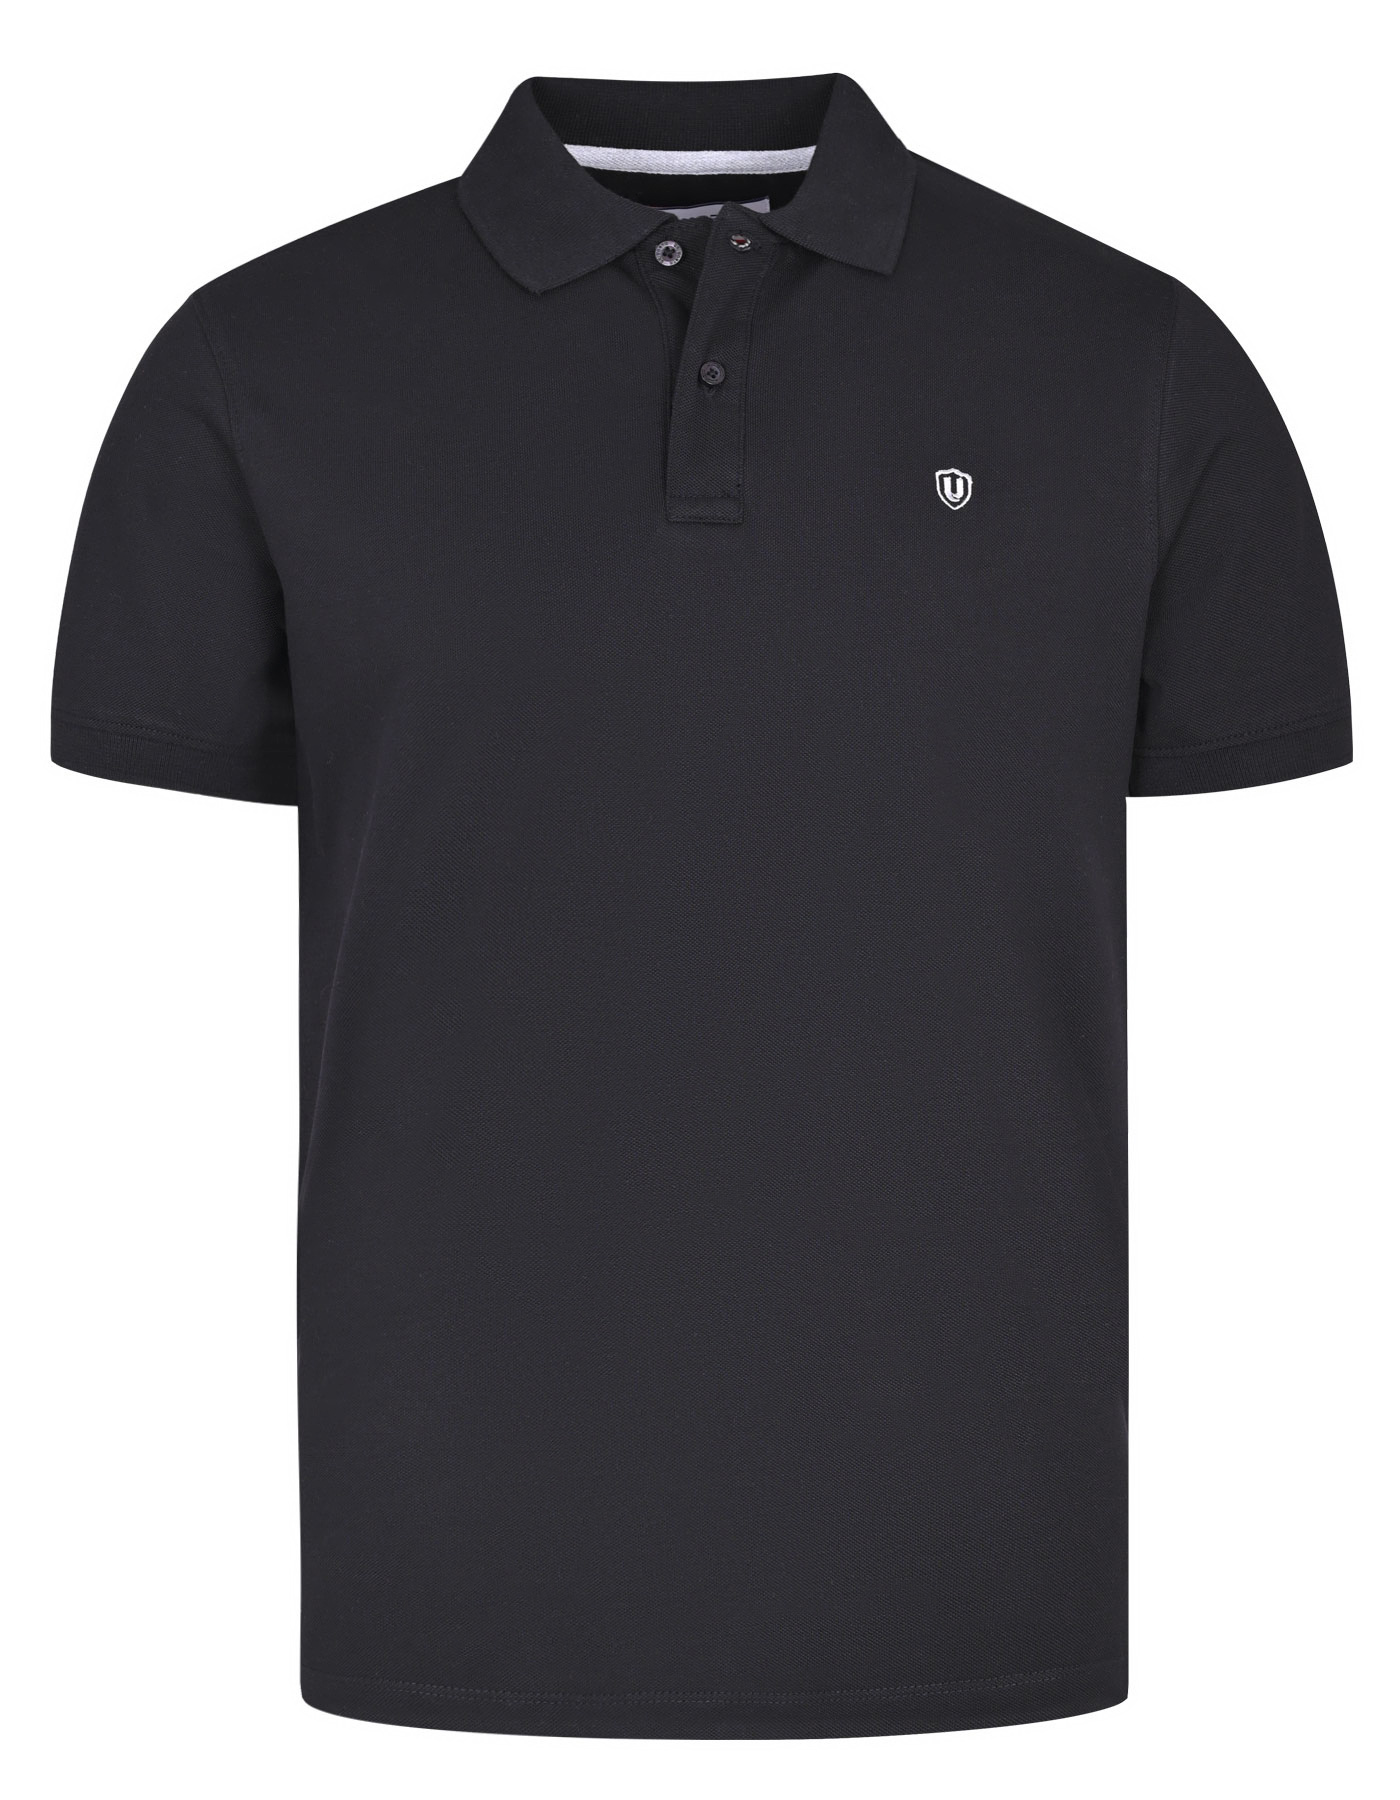 Black Cotton Polo Shirt For Men |Uniworth